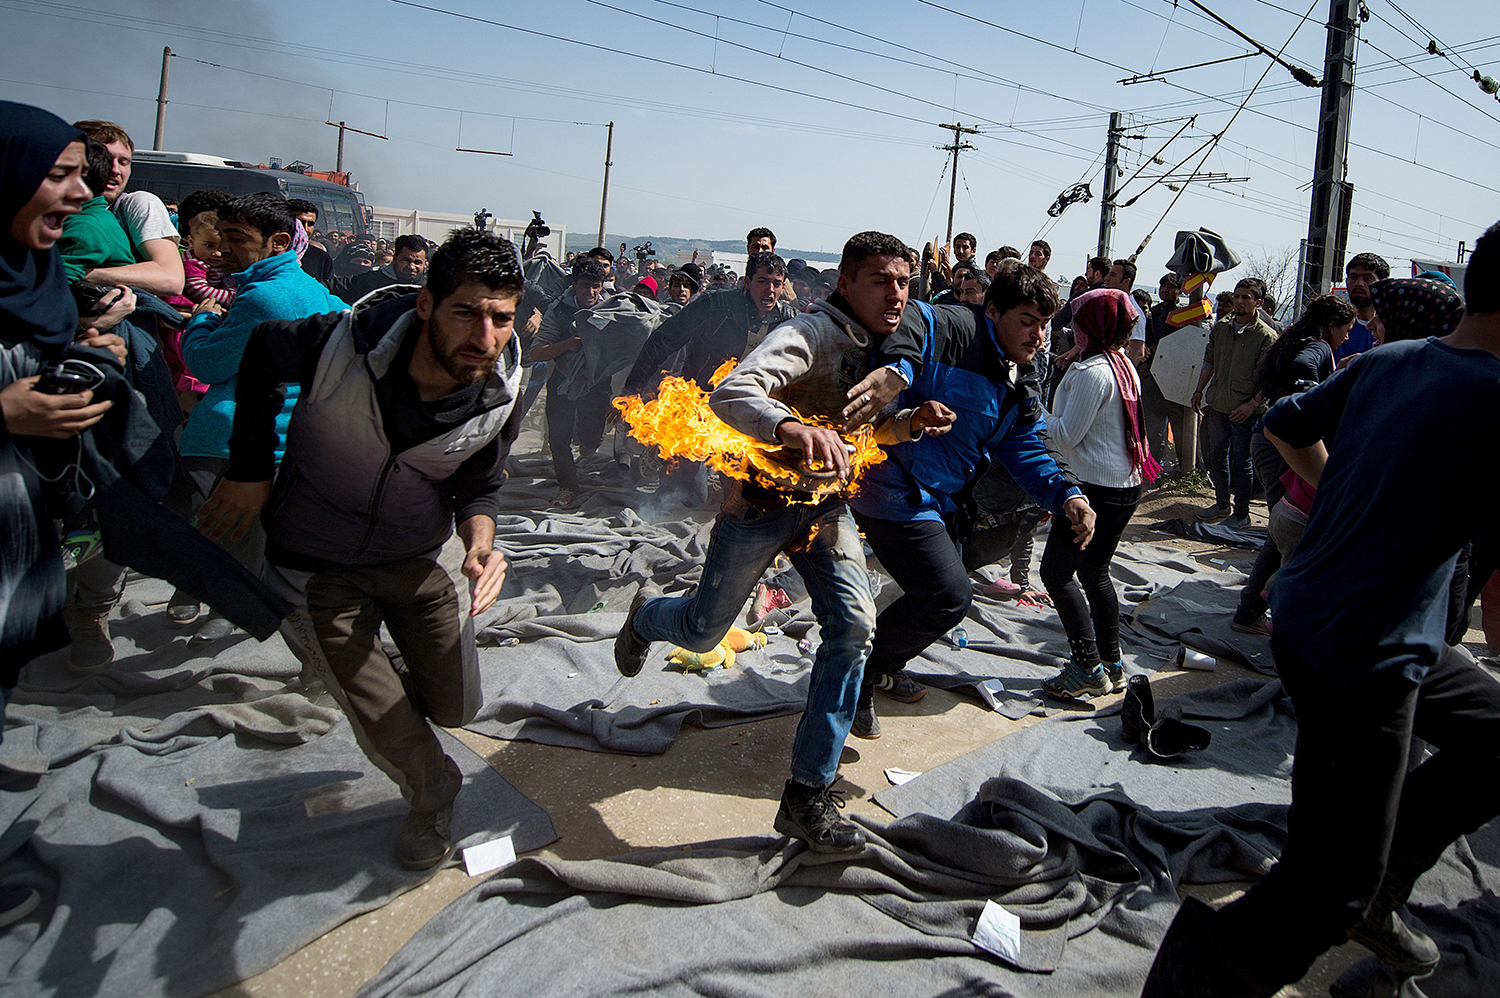 Refugiados se prenden fuego a sí mismos para tratar de cruzar frontera Griega